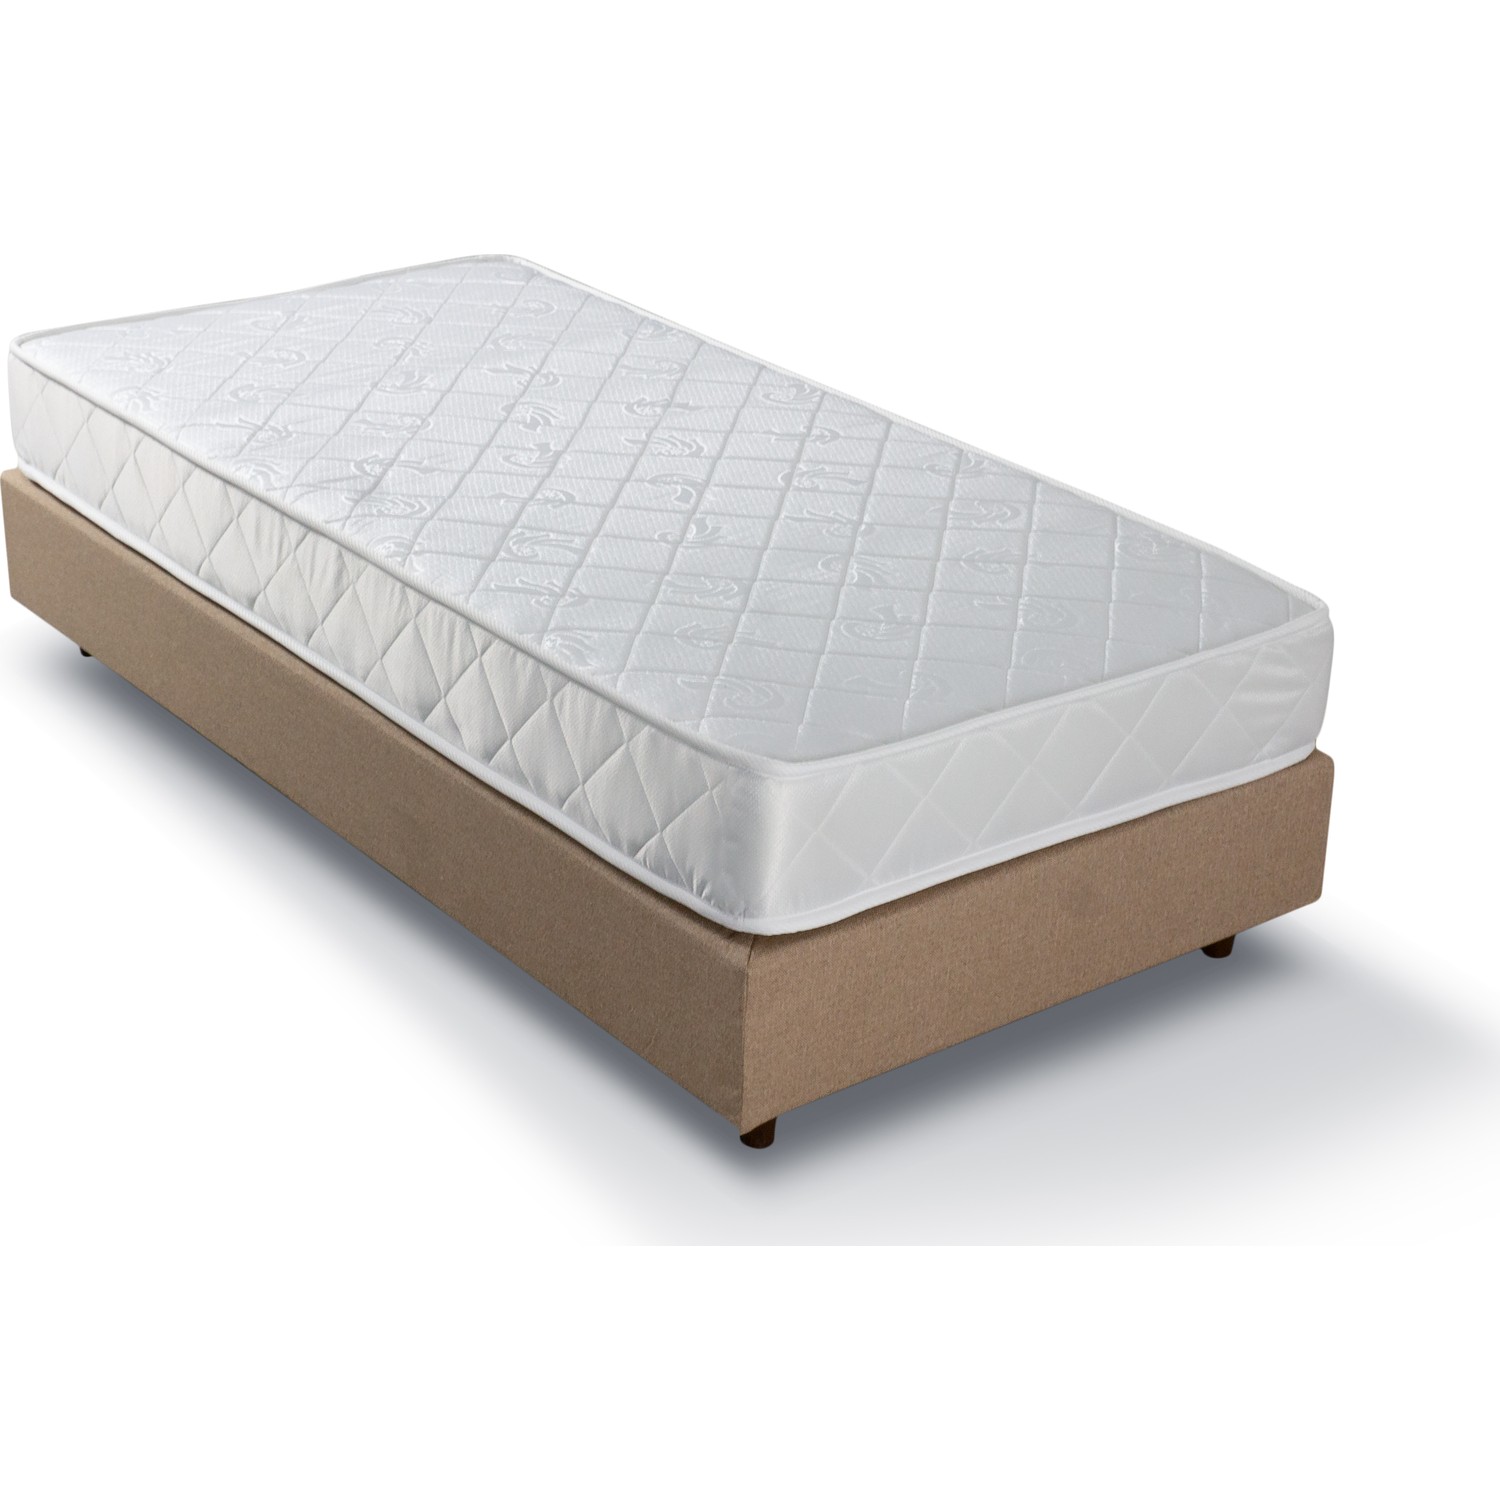 Sleepking Basic Lux Full Yatak Tek Kişilik 80x180 Fiyatı